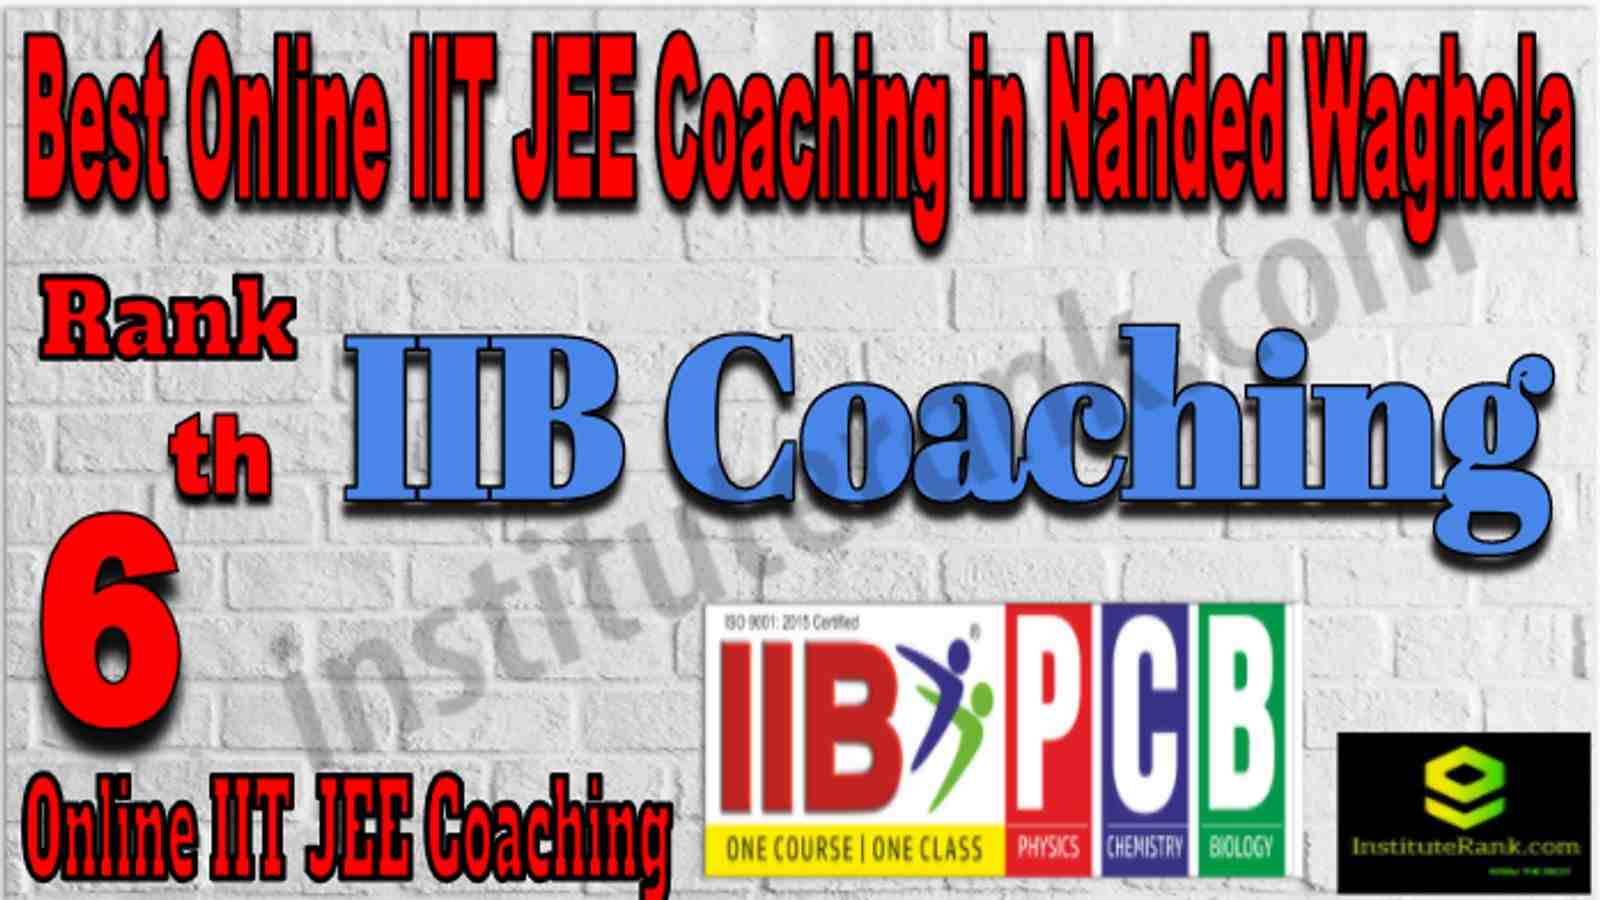 Rank 6 Best Online IIT JEE Coaching in Nanded Waghala